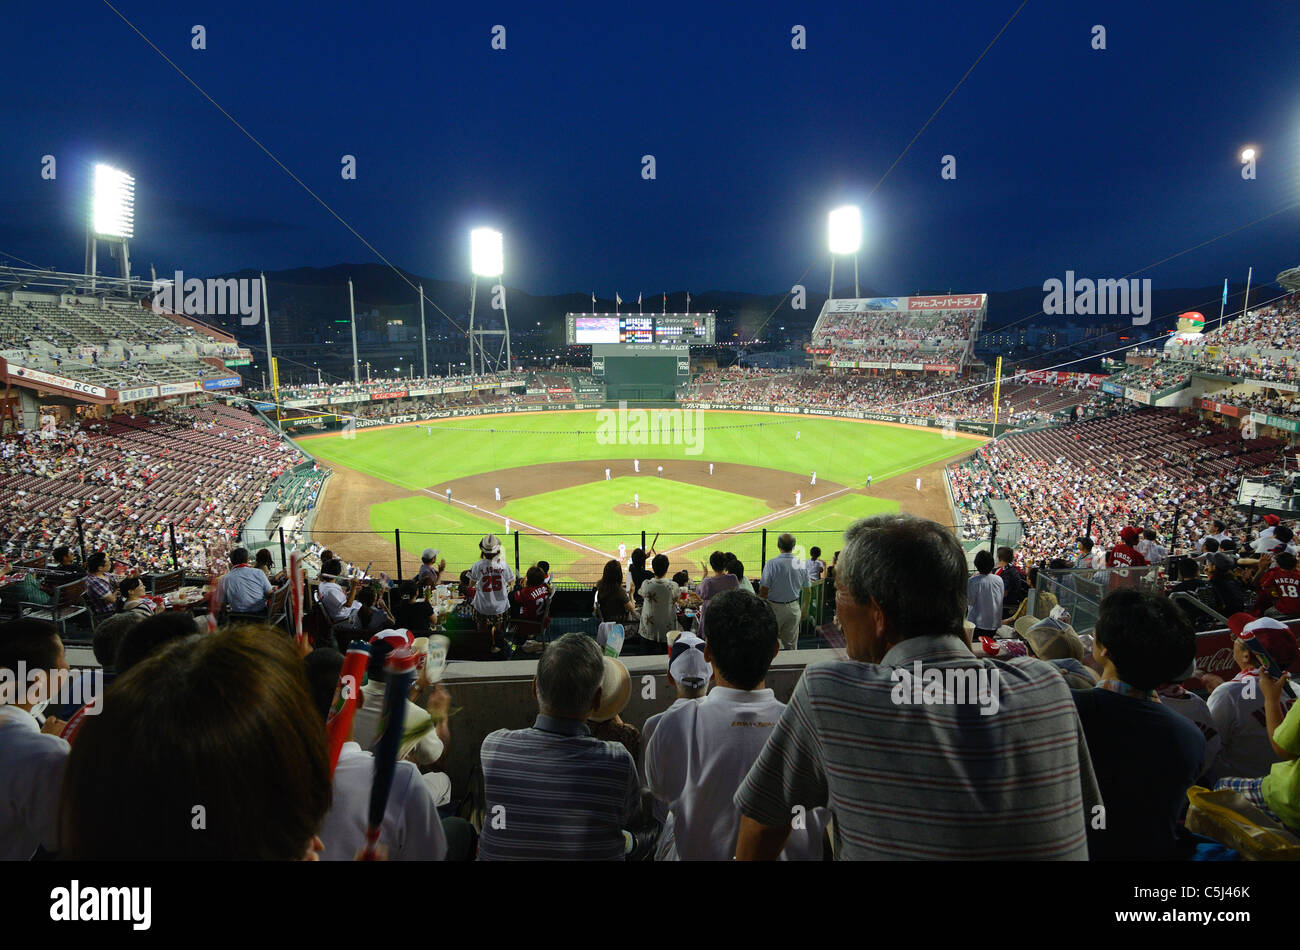 El Hiroshima Toyo Carp vs el Estadio Yokohama Baystars de Mazda en Hiroshima, Japón. Foto de stock